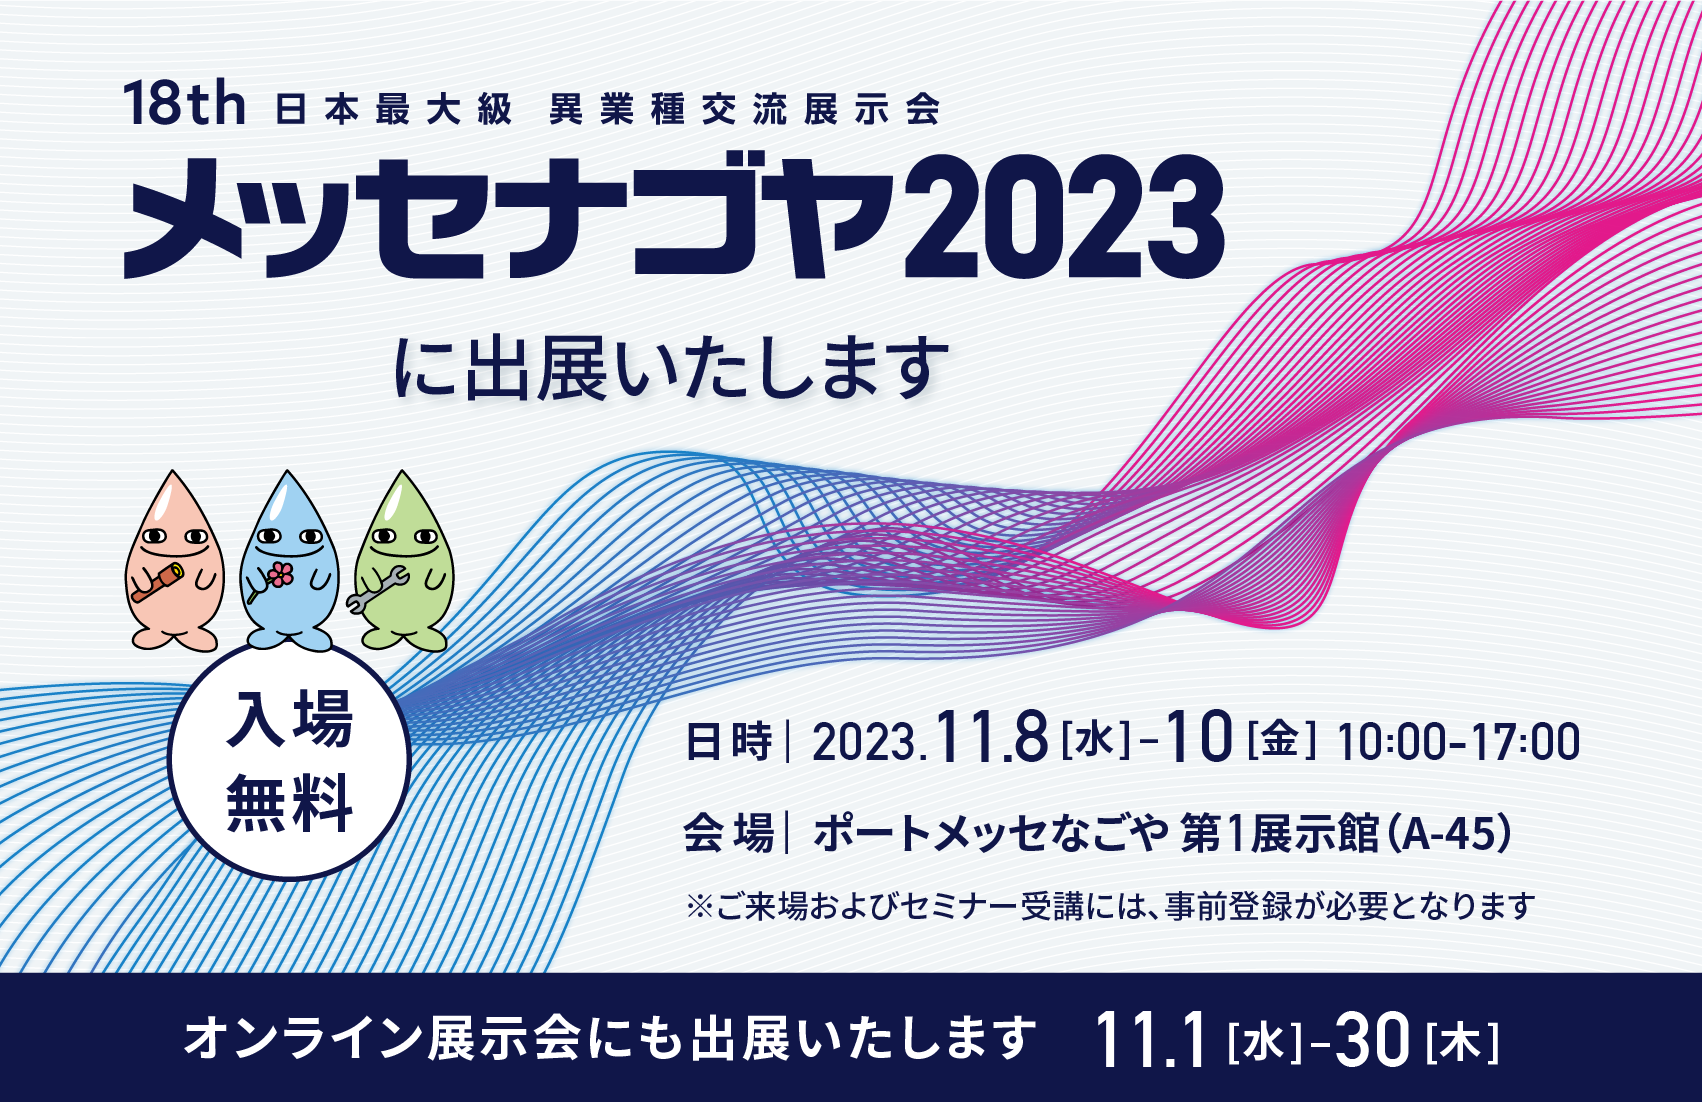 日本最大級異業種交流展示会「メッセナゴヤ2023」に、MONOZUKURI-X研究所として出展いたします